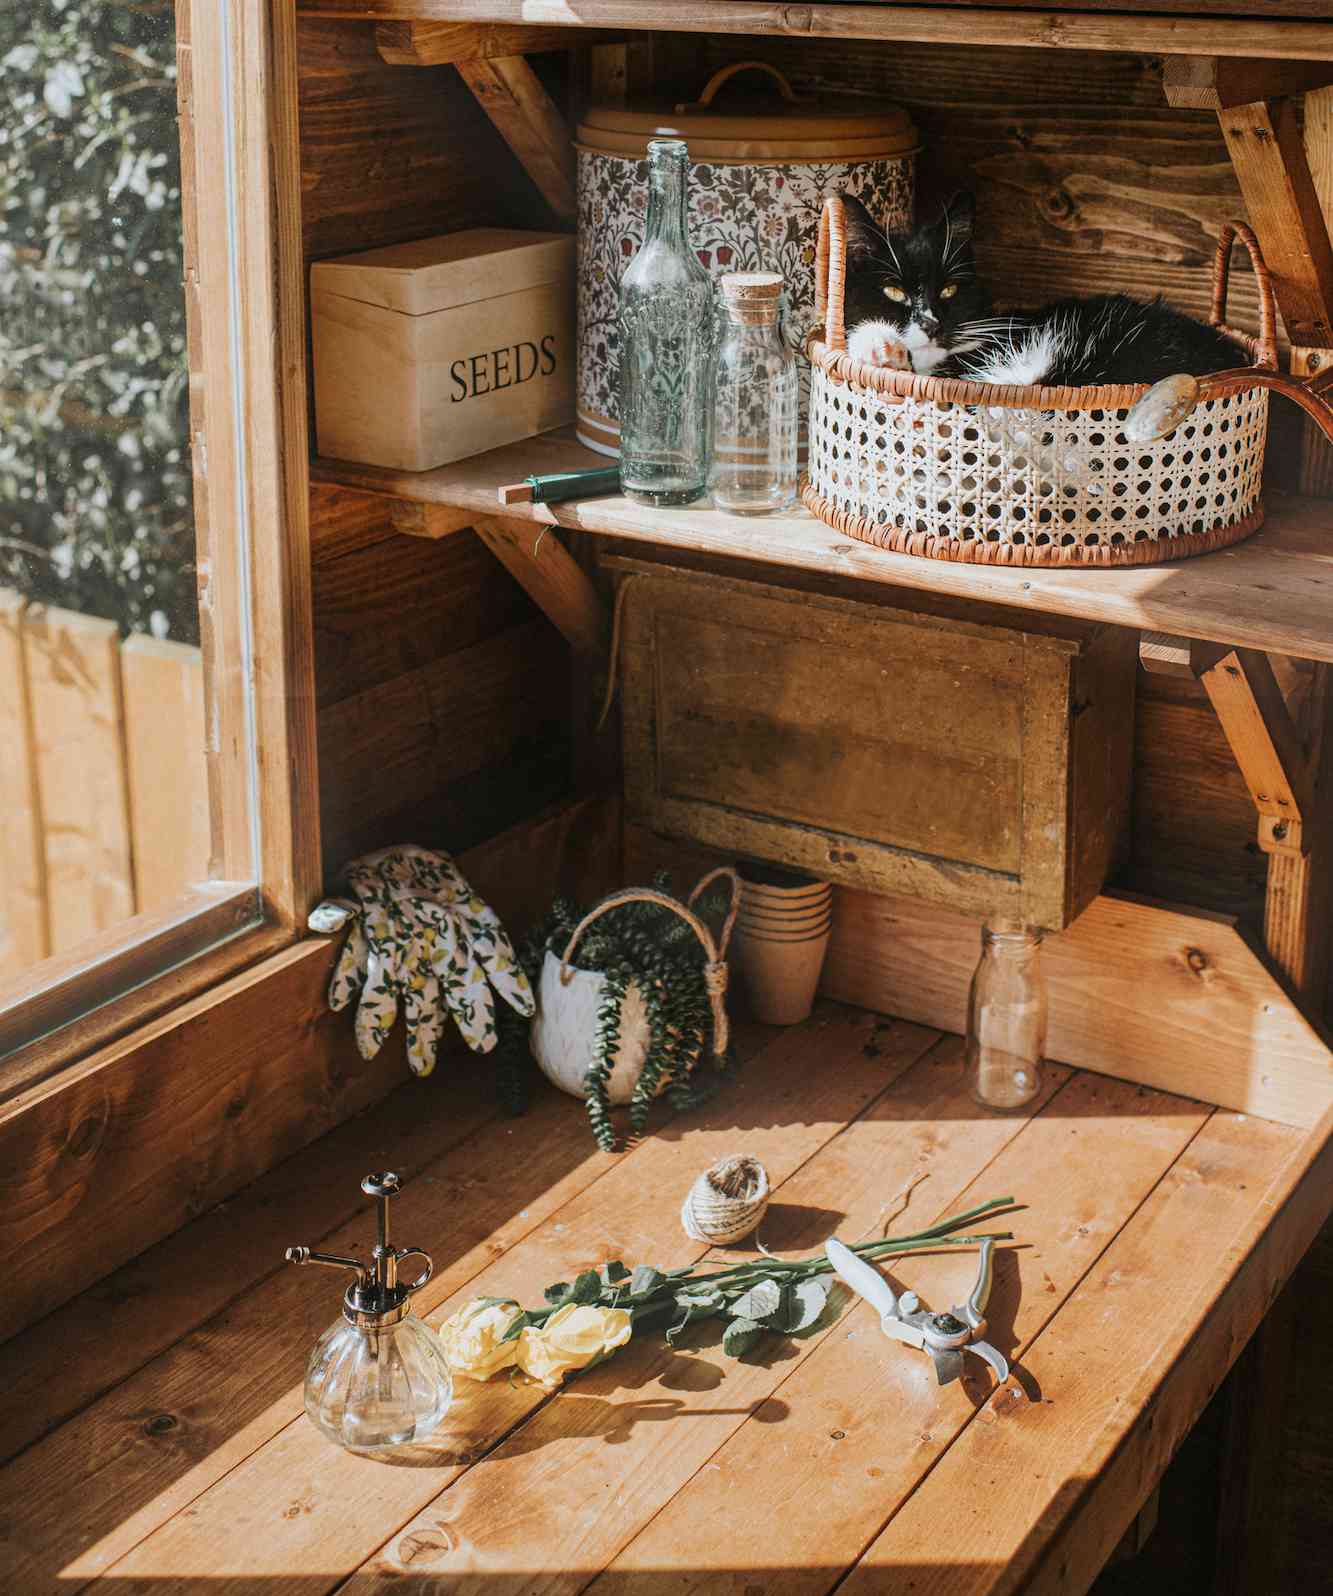 Zona de banco de trabajo de madera en invernadero con estanterías y gato durmiendo en cesta en estantería